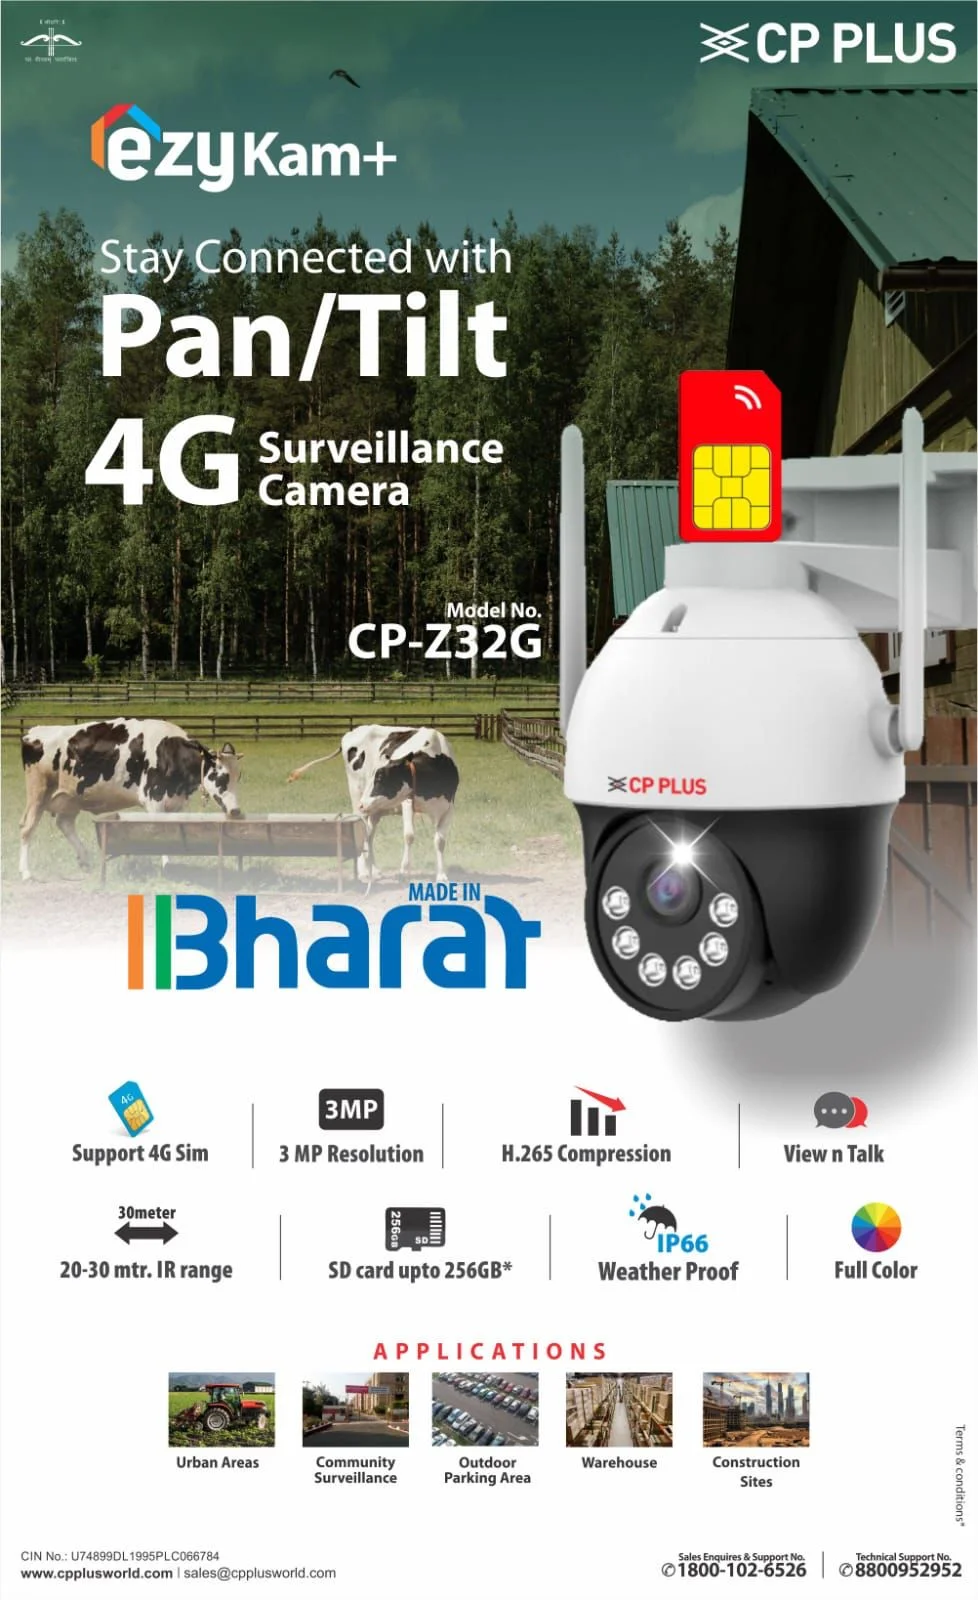 CP-Z32G ezyKam+ Pan & Tilt 4G Surveillance Camera.